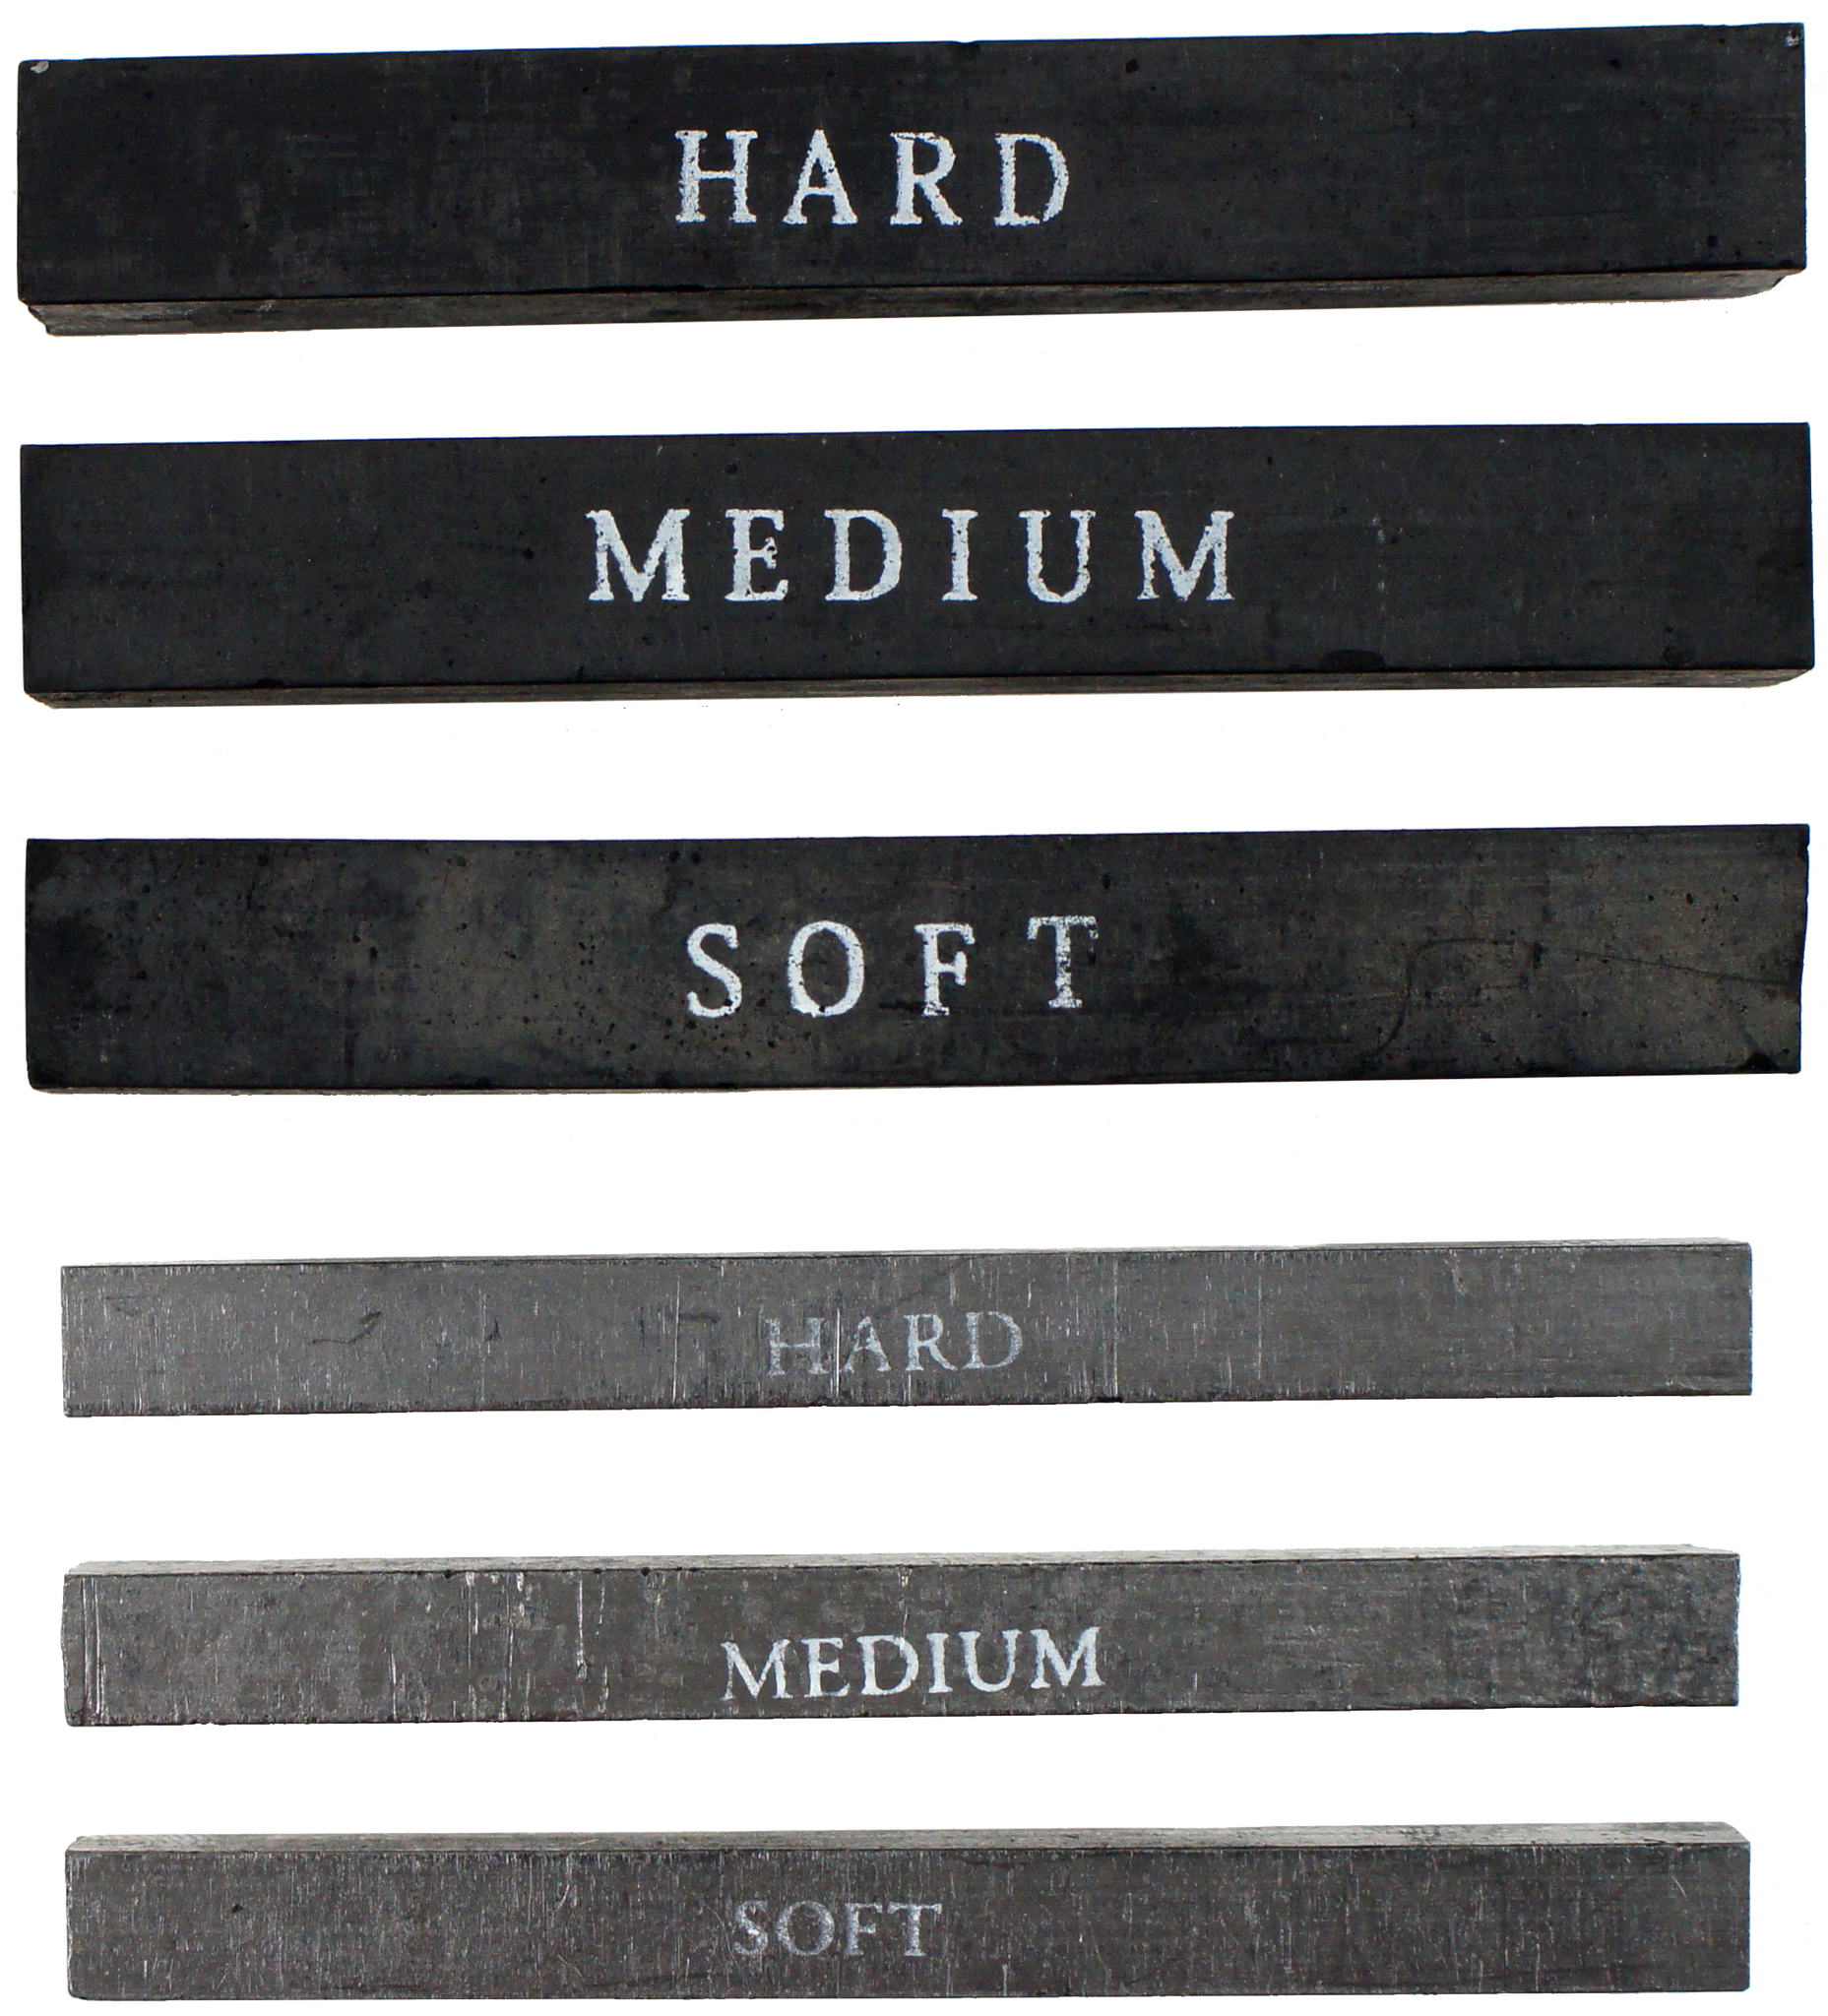 Studio Series Metallic Markers Set